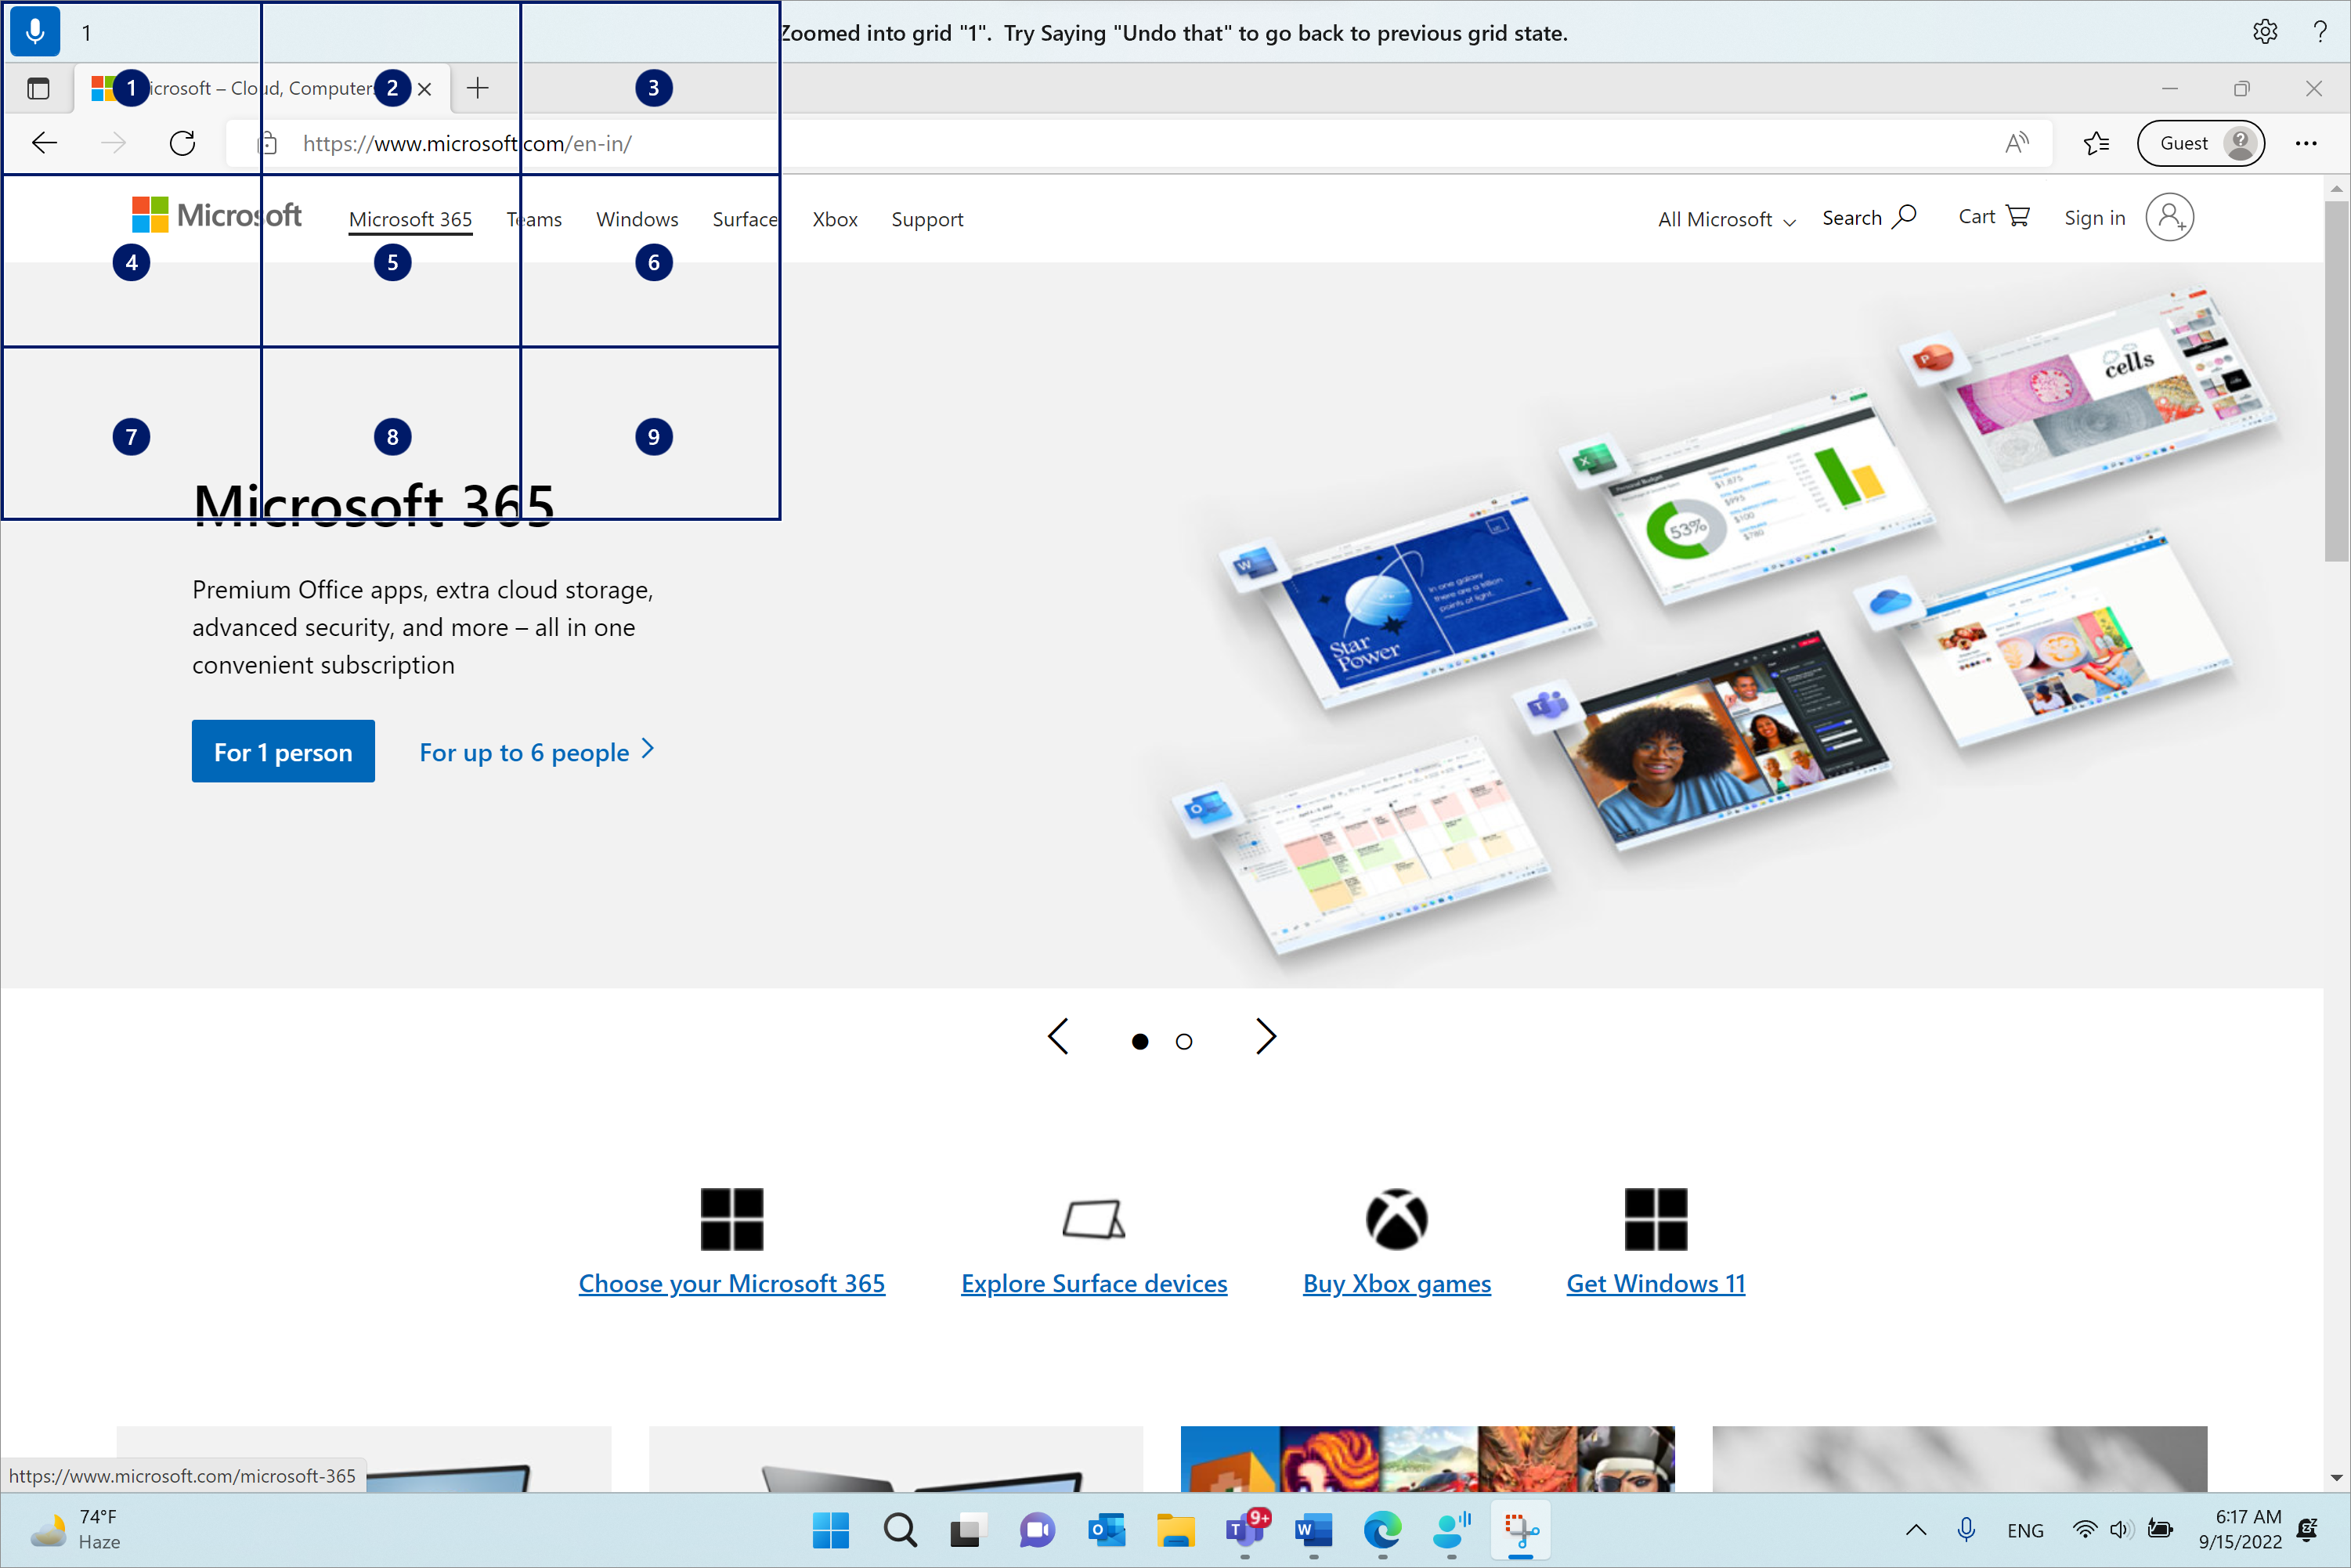 Microsoft Edge đang mở và ở Microsoft.com trang. Thanh truy nhập giọng nói ở trên cùng và ở trạng thái nghe. Lệnh được phát hành là "1" và phản hồi được hiển thị là "Phóng to thành lưới "1". Hãy thử nói "hoàn tác điều đó" để quay lại trạng thái lưới trước đó."